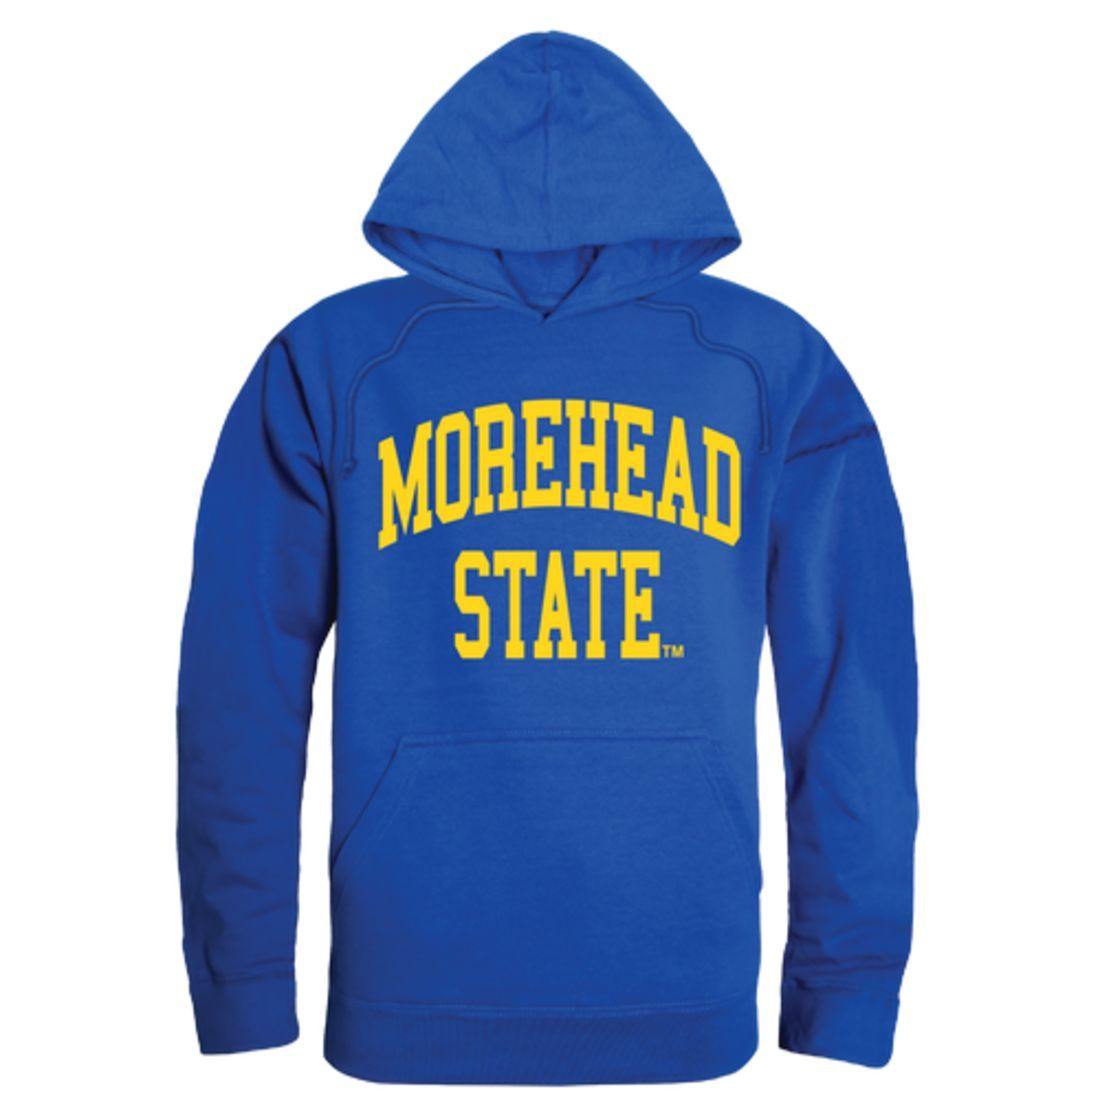 MSU Morehead State University Eagles College Hoodie Sweatshirt Royal-Campus-Wardrobe